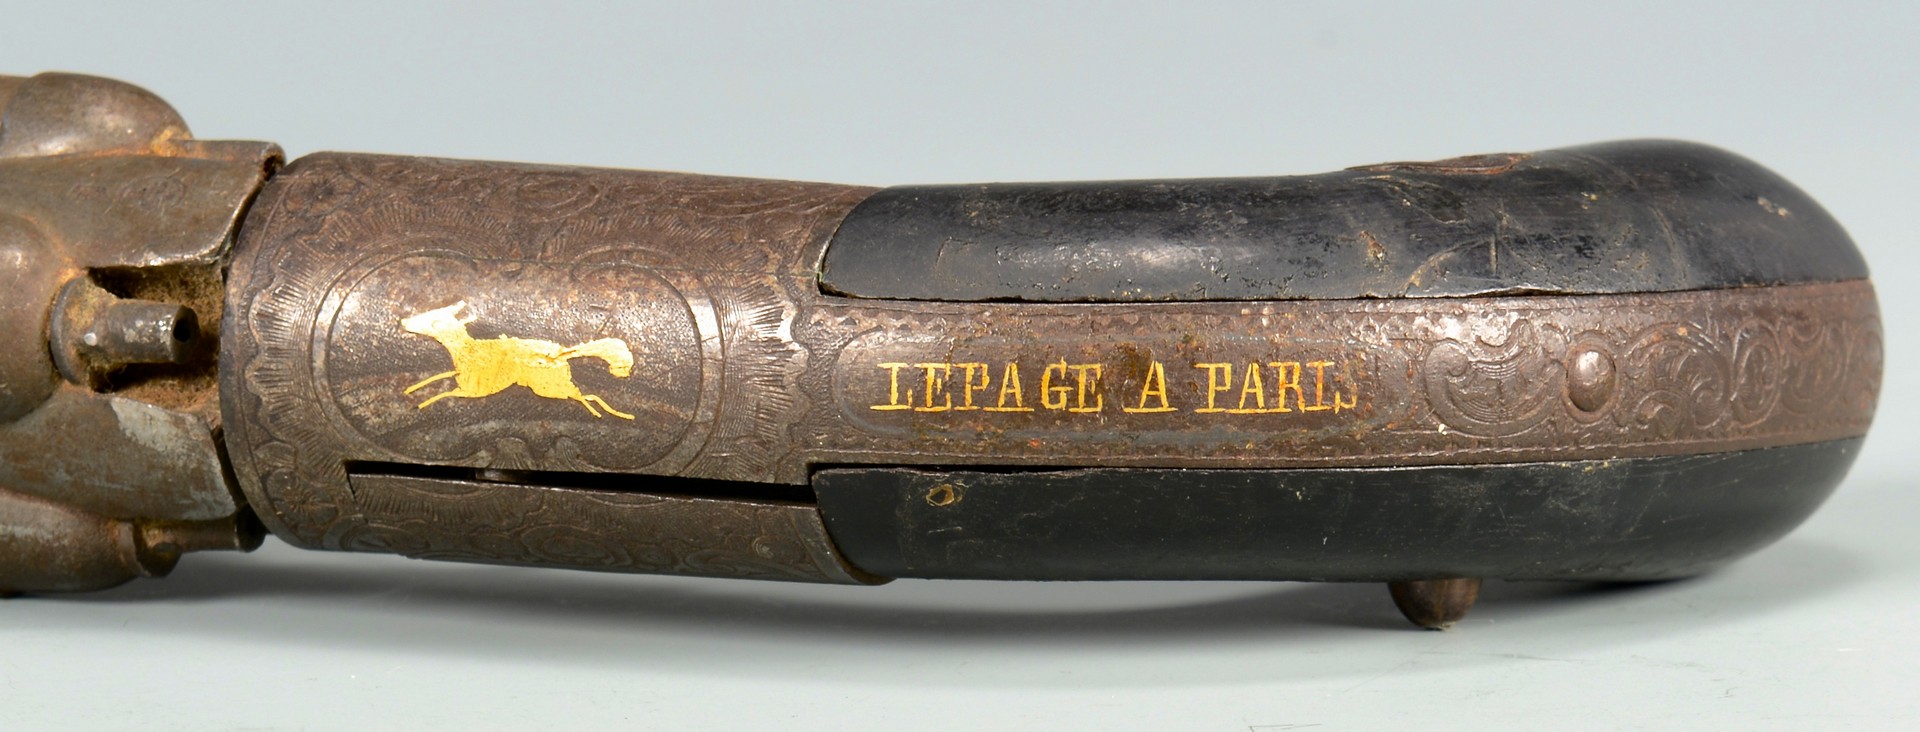 Lot 193: French Mariette Pepperbox Pistol, Lepage Paris